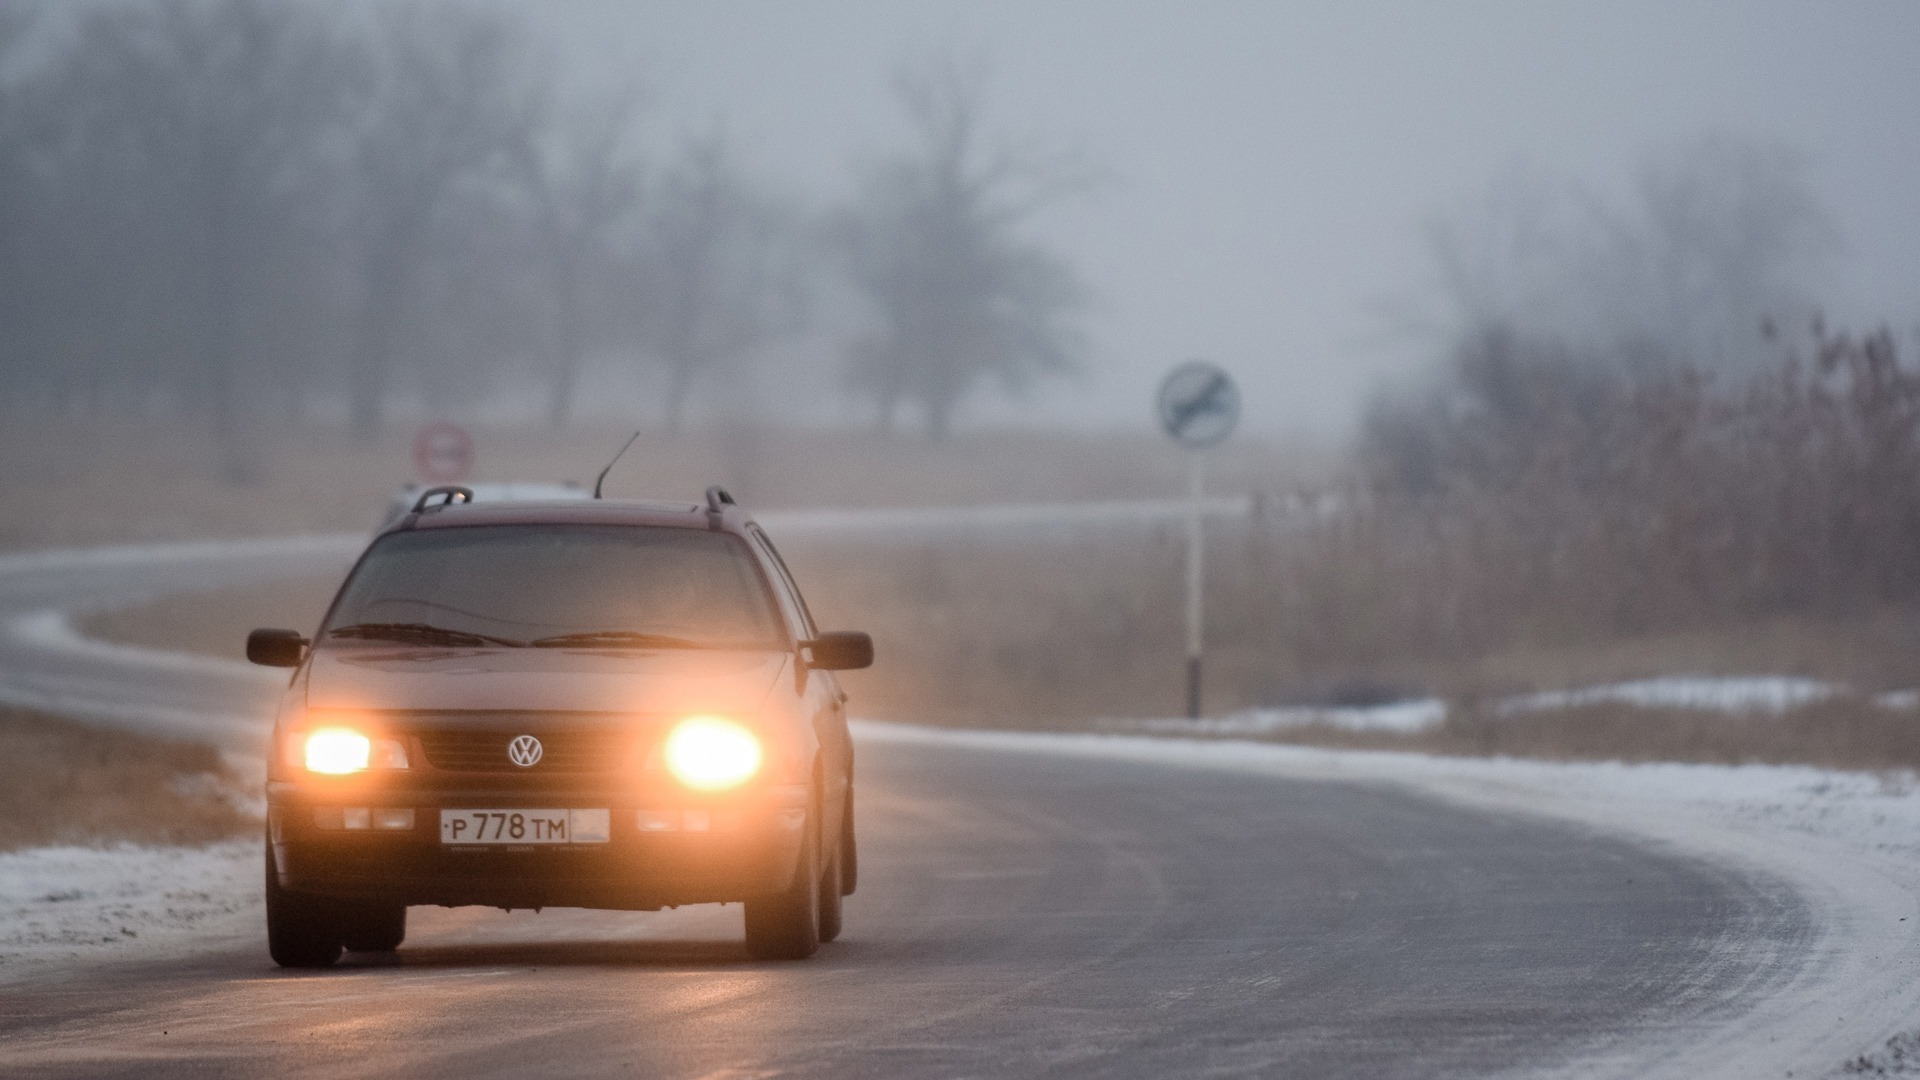 Опасный для жизни водителей «радар» установили на трассе в Приморье — видео